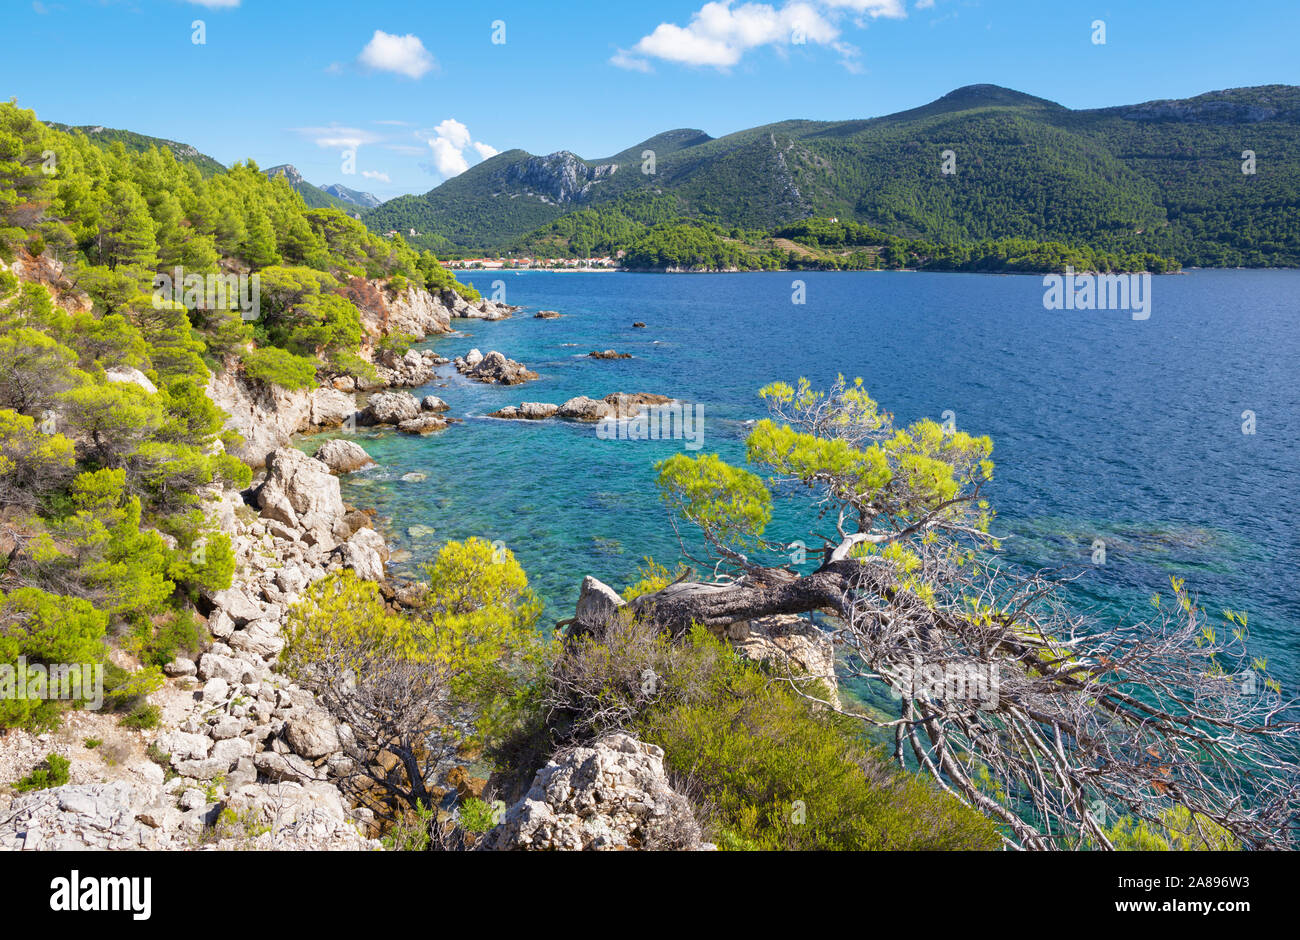 Croatie - La côte de la péninsule de Peliesac près de Zuliana Banque D'Images